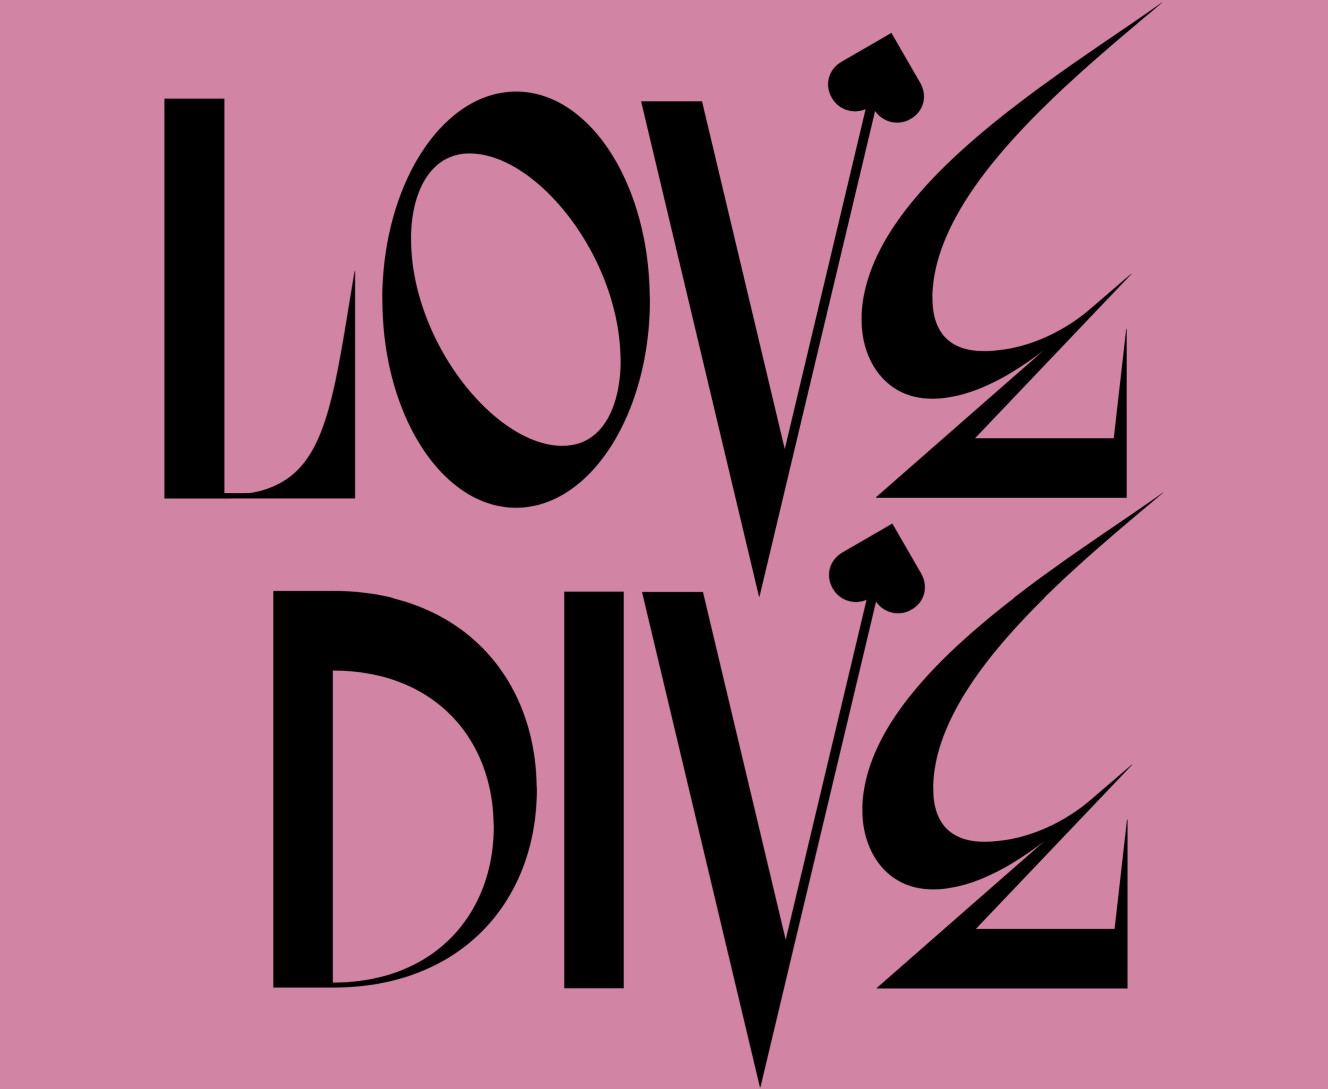 Айв love dive